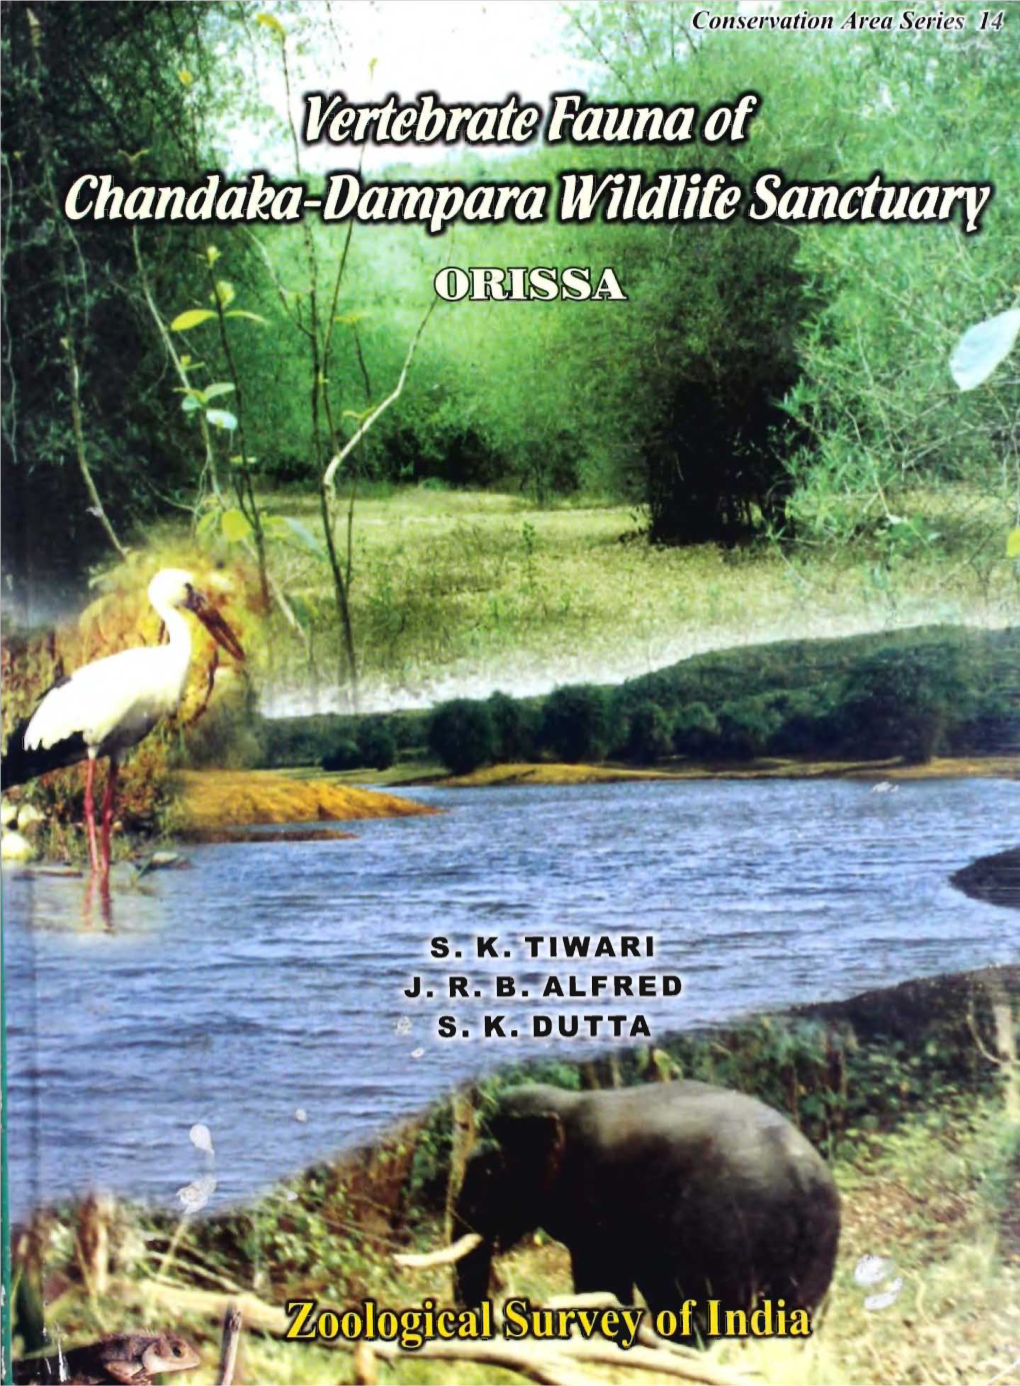 Chandaka-Dampara Wildlife Sanctuary Orissa